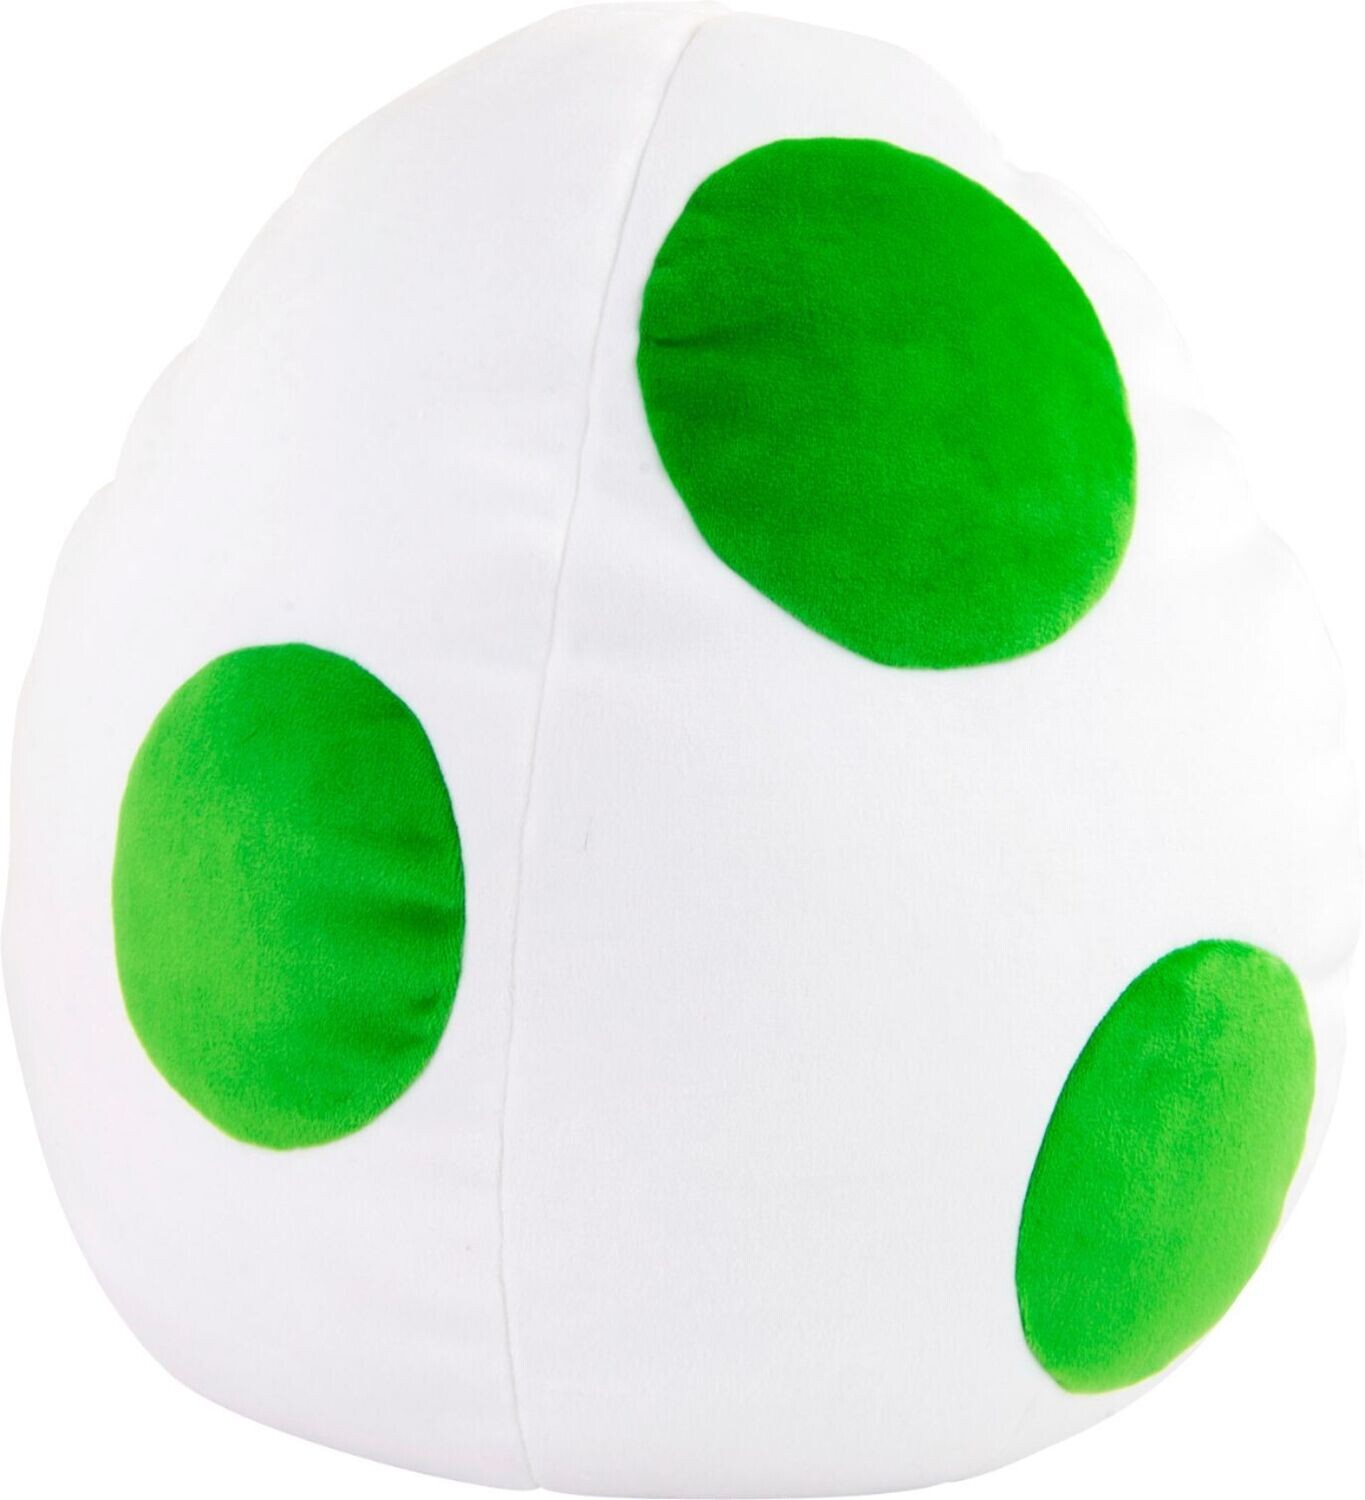 TOMY Club Mocchi-Mocchi Nintendo Yoshi Egg Large Cushion Plush